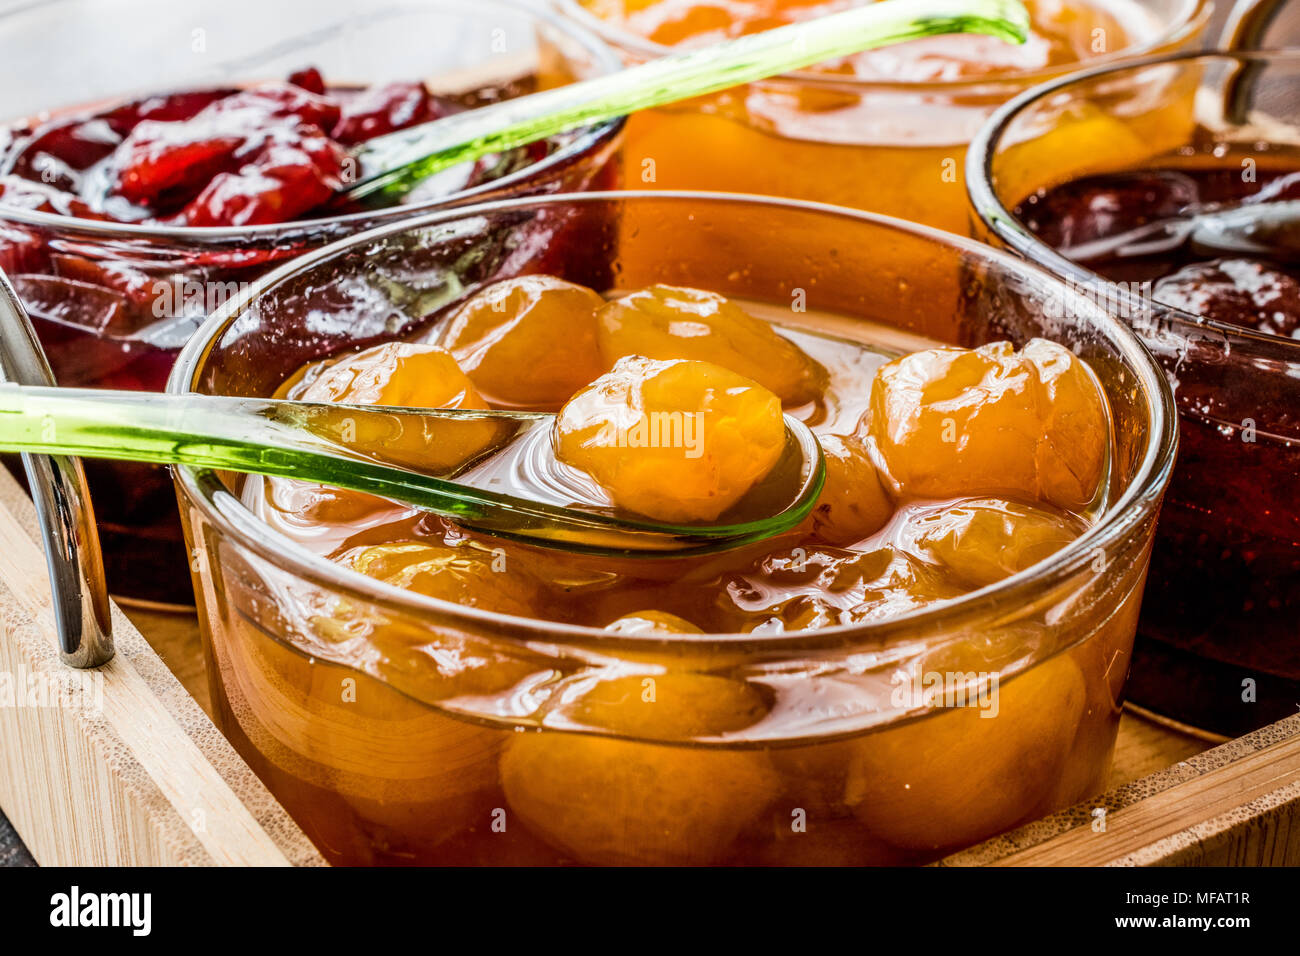 Mirabellen Marmelade im Glas Schale mit Löffel und verschiedene Marmeladen  frühstück Konzept Stockfotografie - Alamy